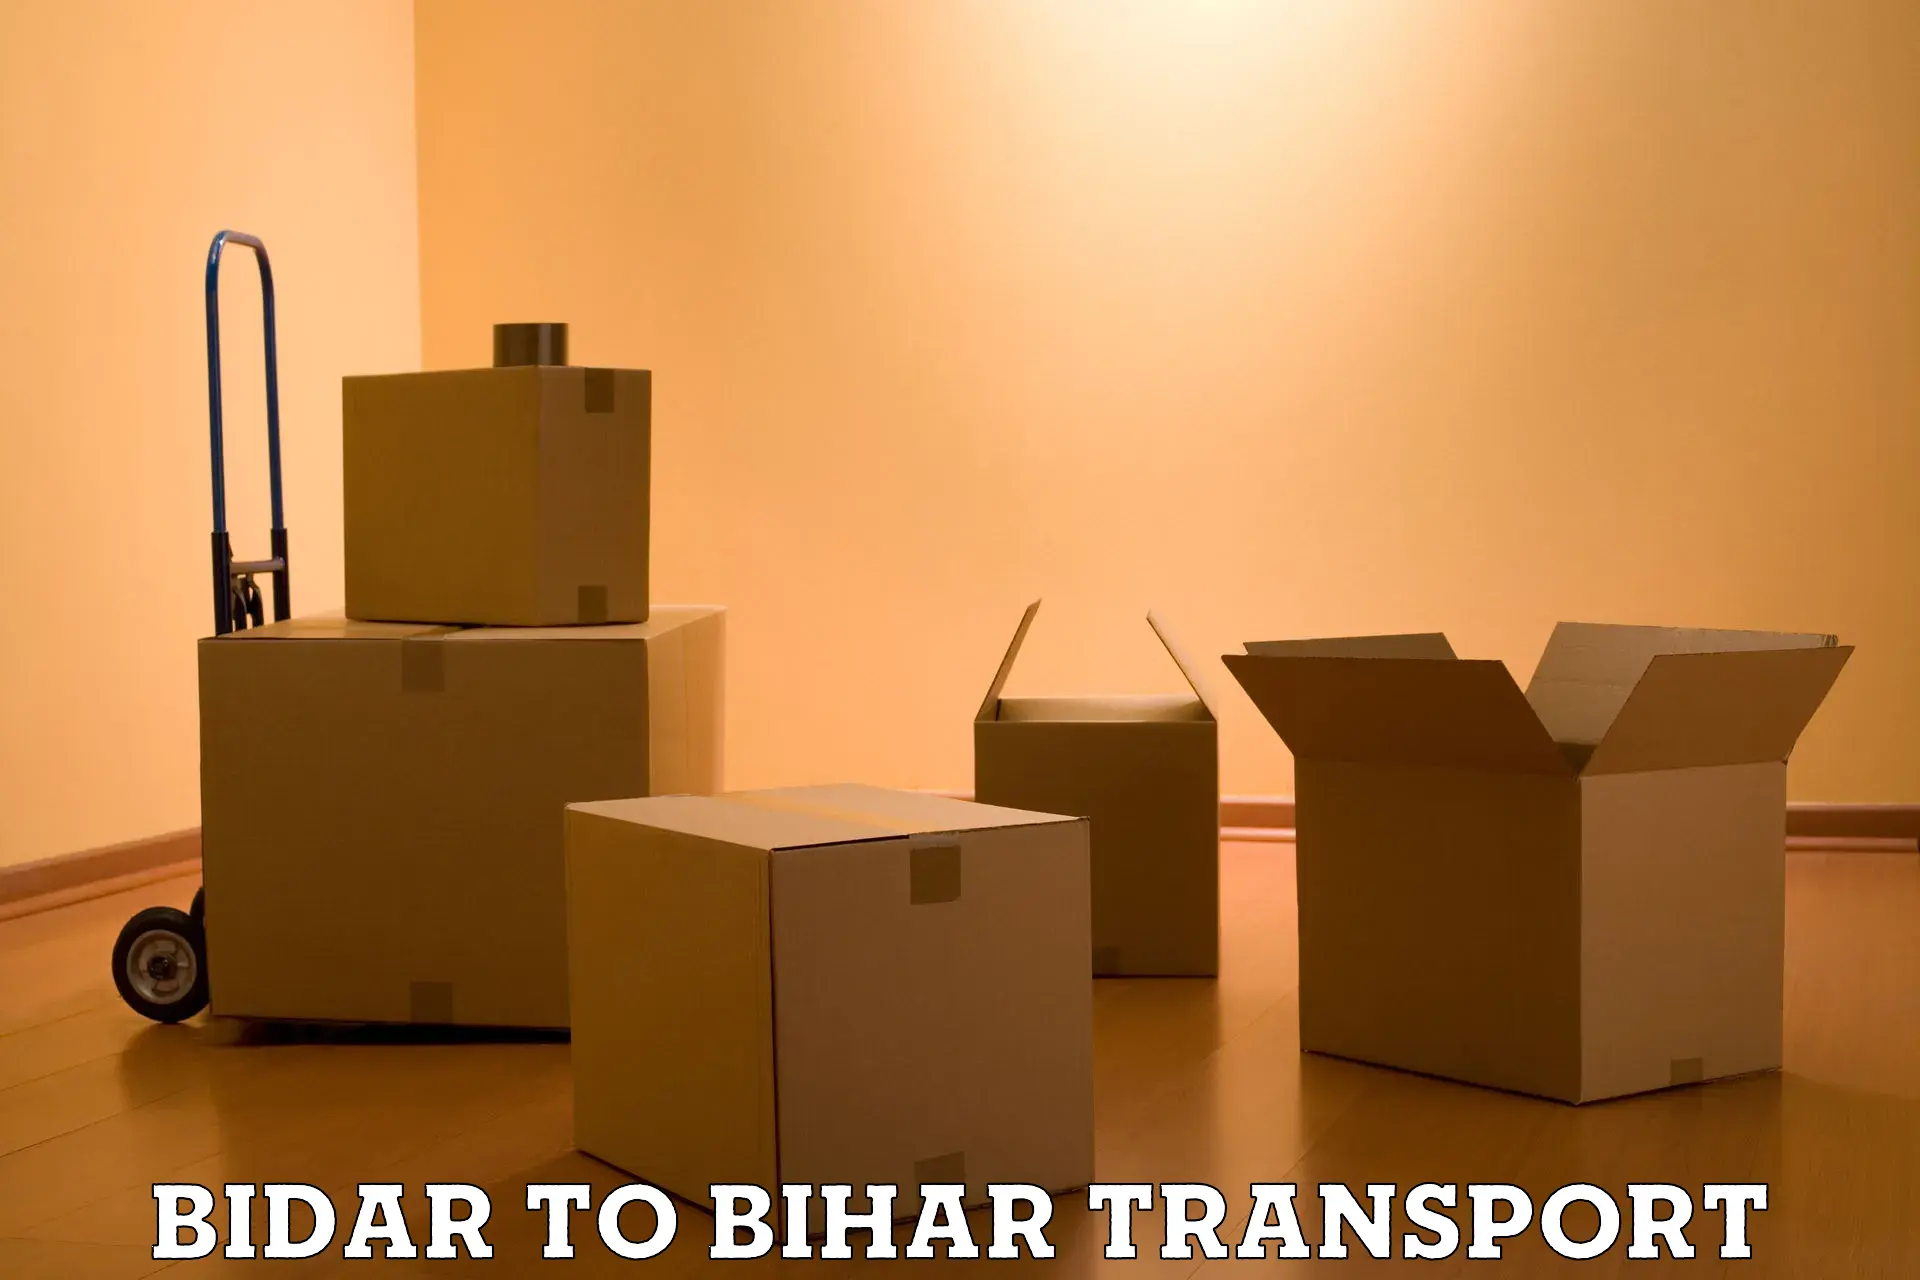 Daily parcel service transport Bidar to Jiwdhara